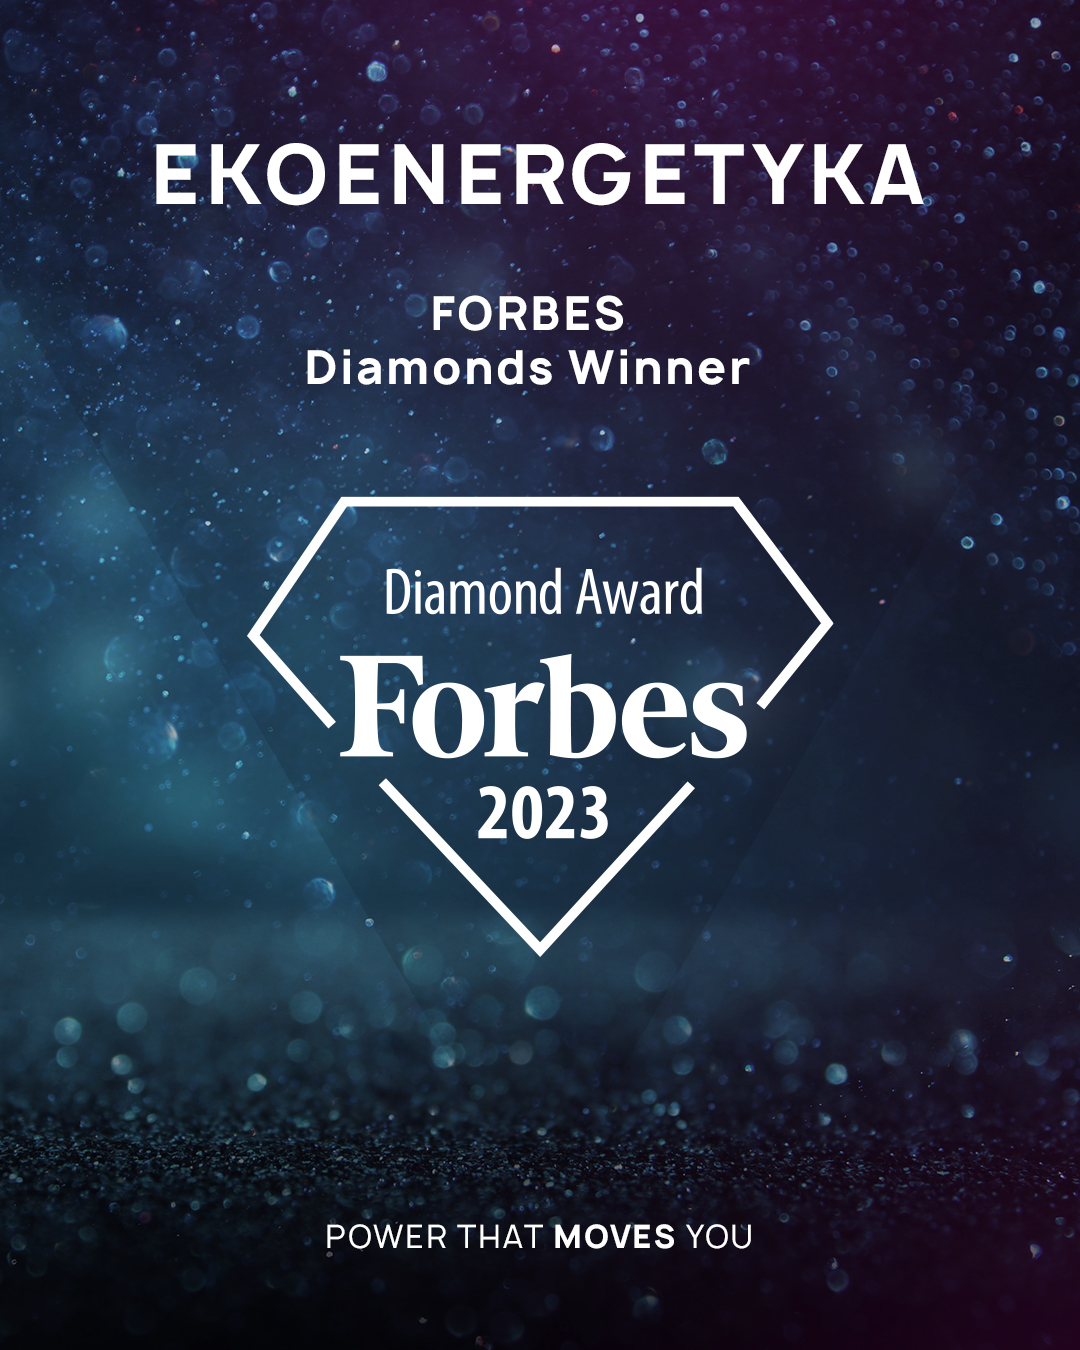 Ekoenergetyka Forbes Diamonds, Ekoenergetyka